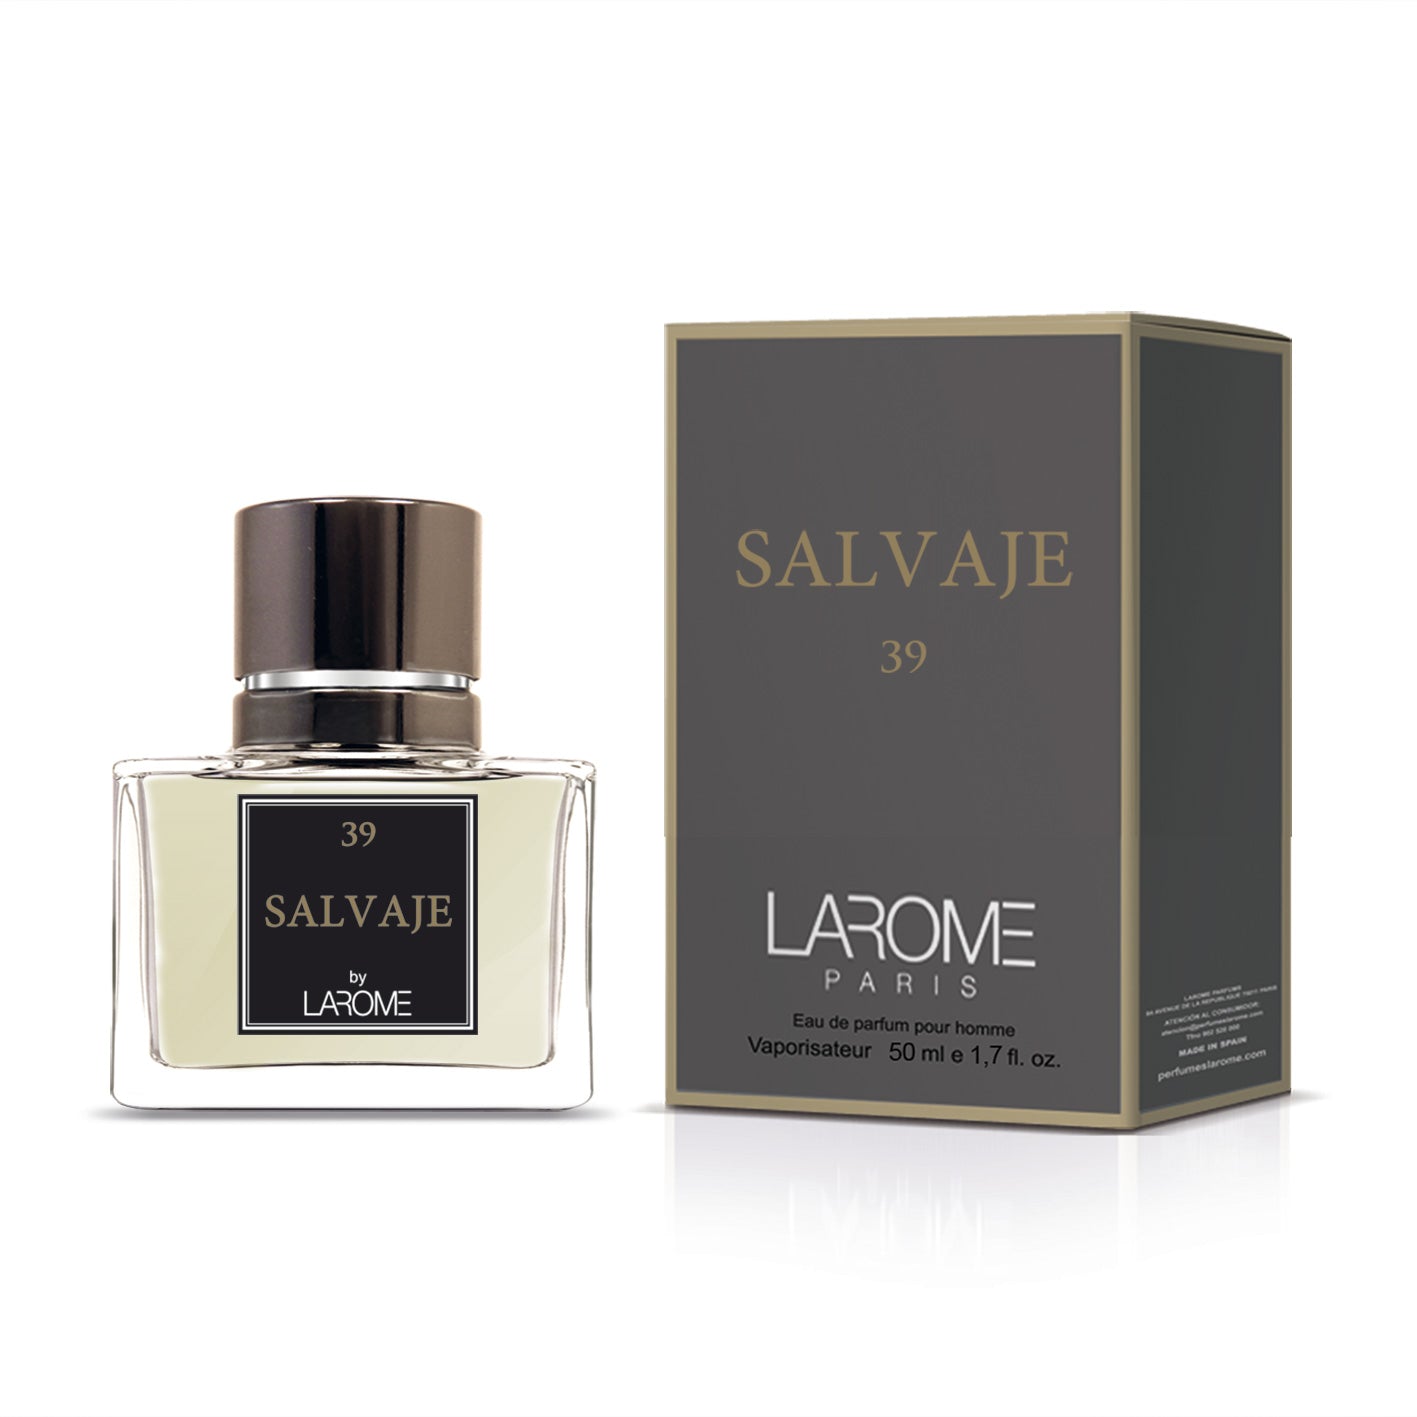 Salvaje 39M by Larome geïnspireerd door Sauvage